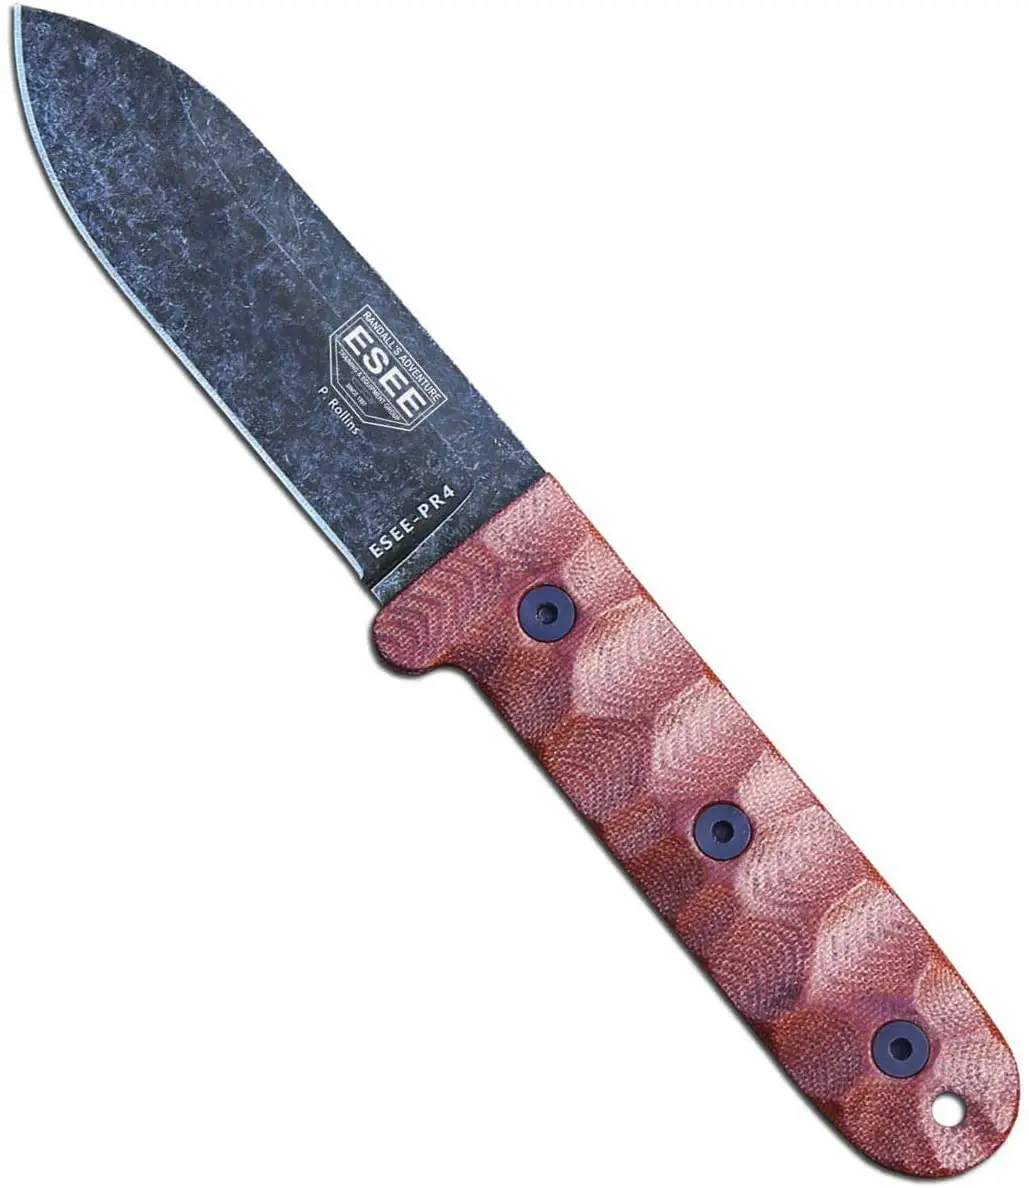 ESSE PR4 Best Bushcraft Knife Under 100